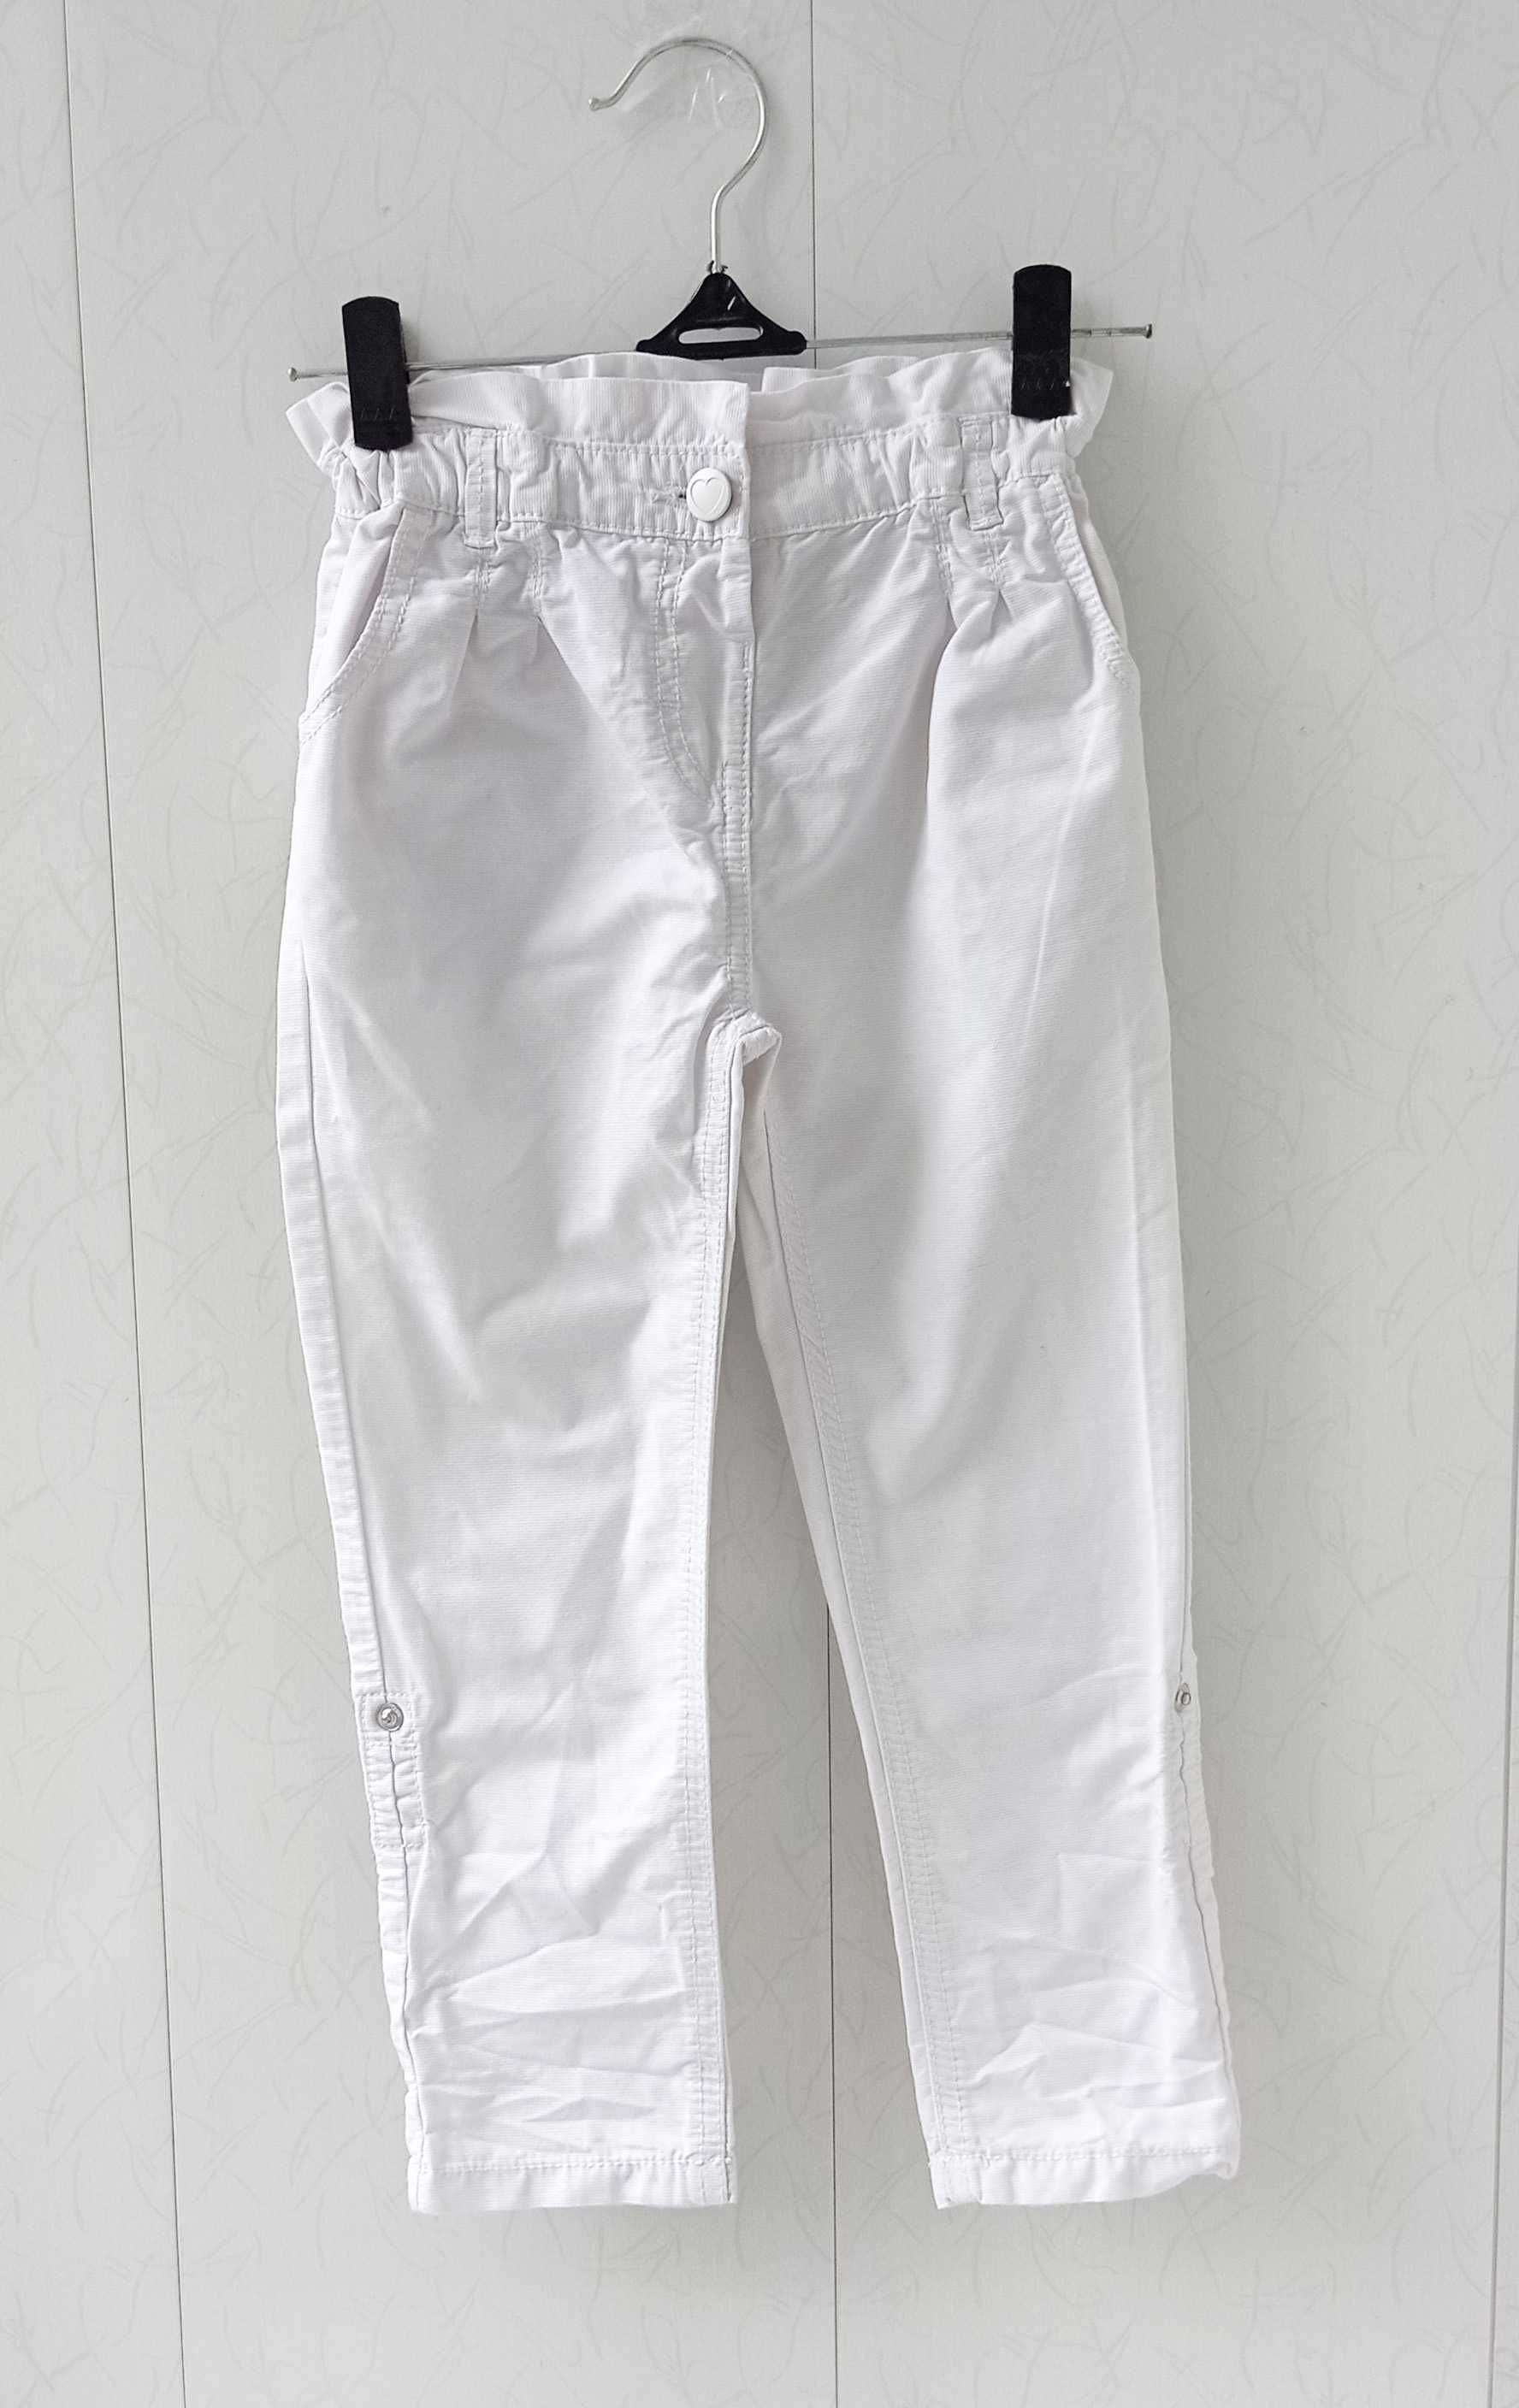 Комплект «Единорог»: Реглан + штаны  ( костюм / набор / лосины )